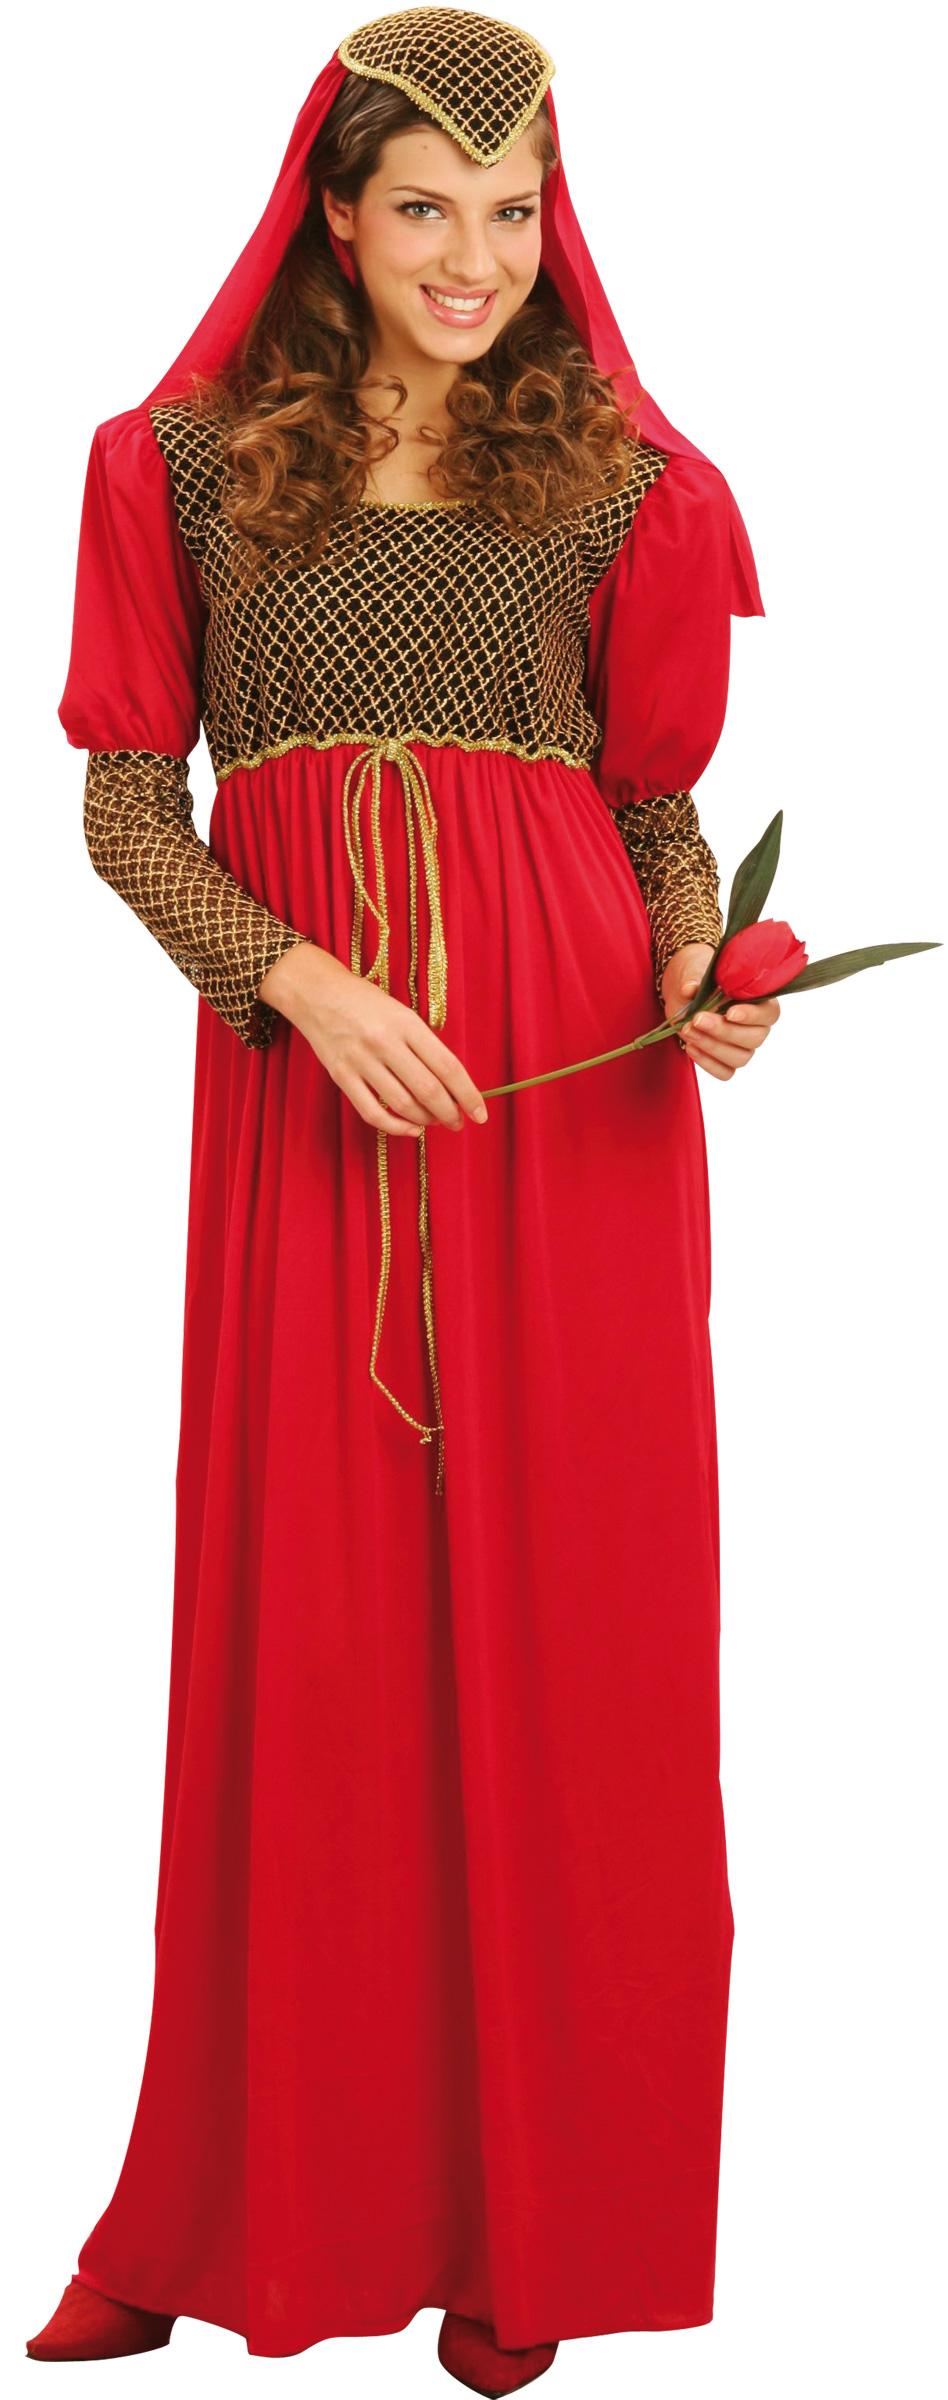 Foto Disfraz de princesa medieval para mujer foto 120853